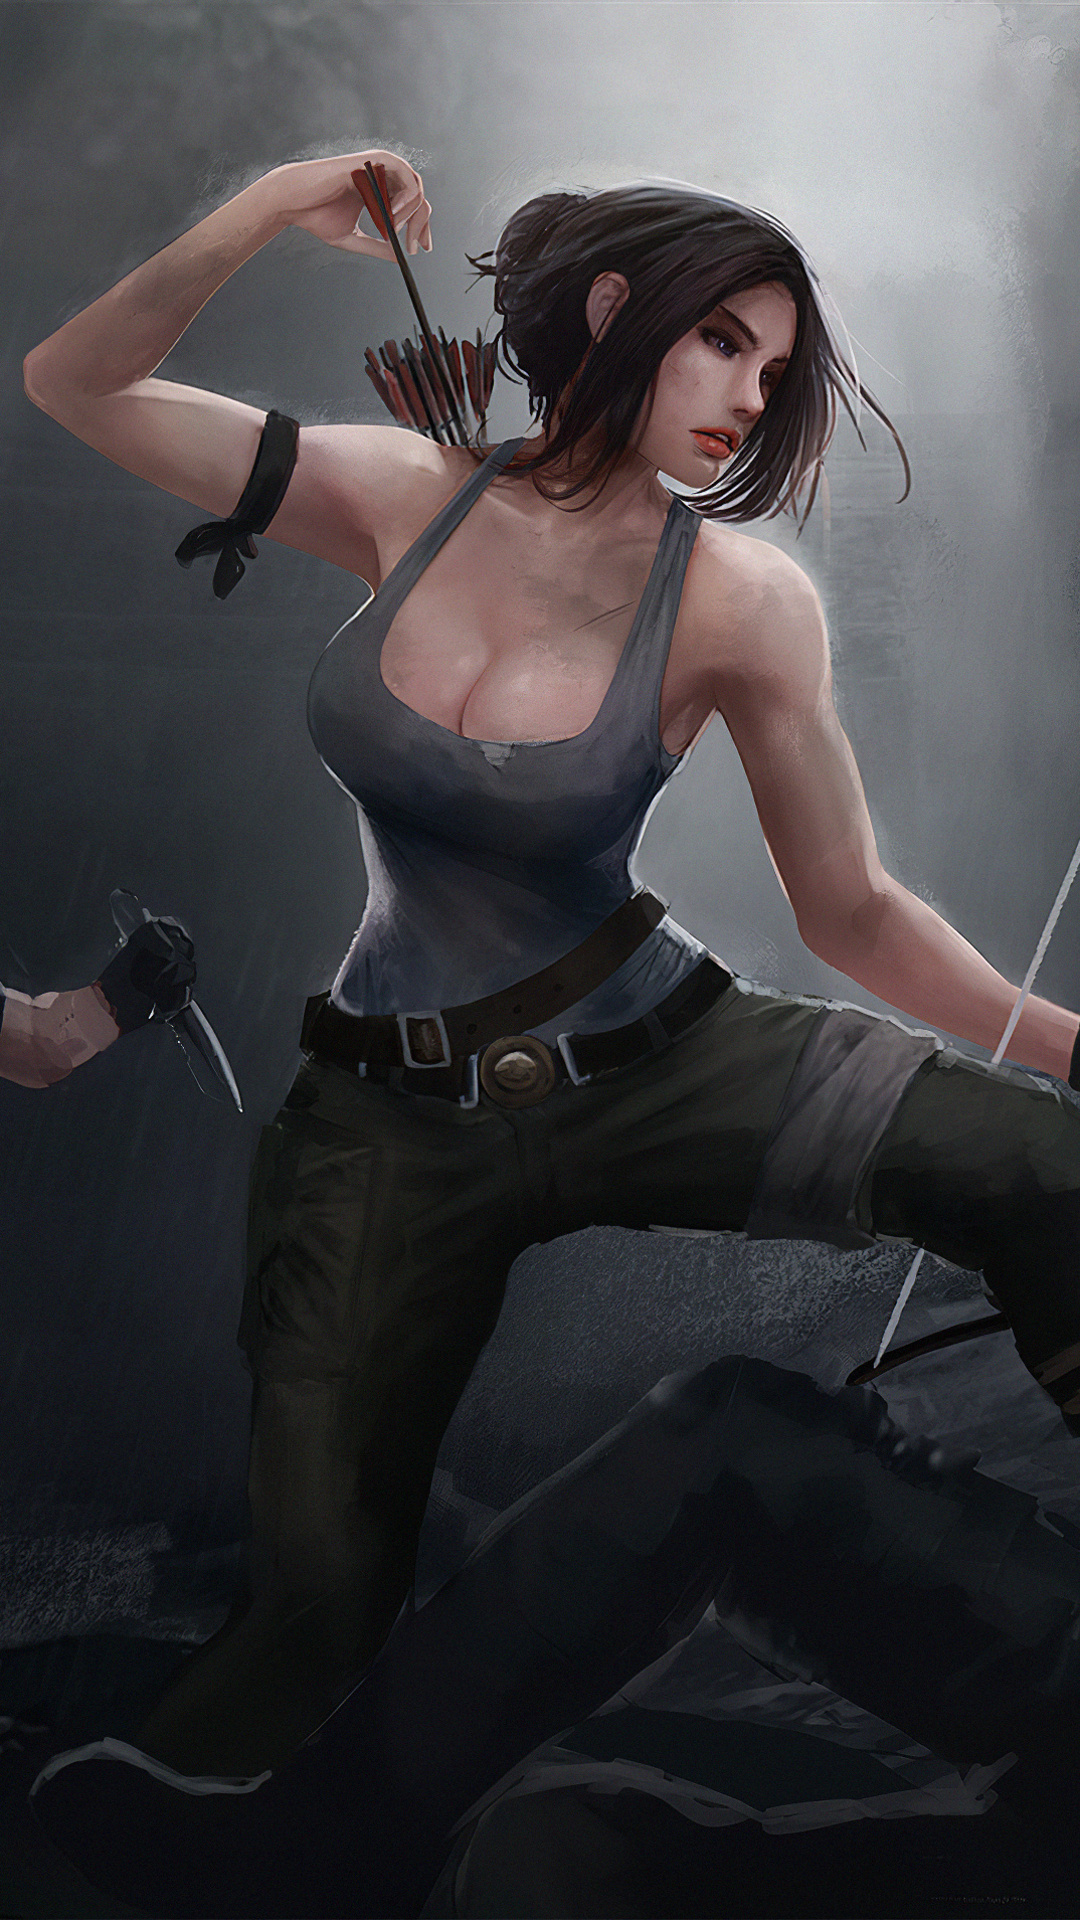 1080x1920 Tomb Raider Art4k Iphone 7,6s,6 Plus, Pixel xl ,One Plus 3,3t